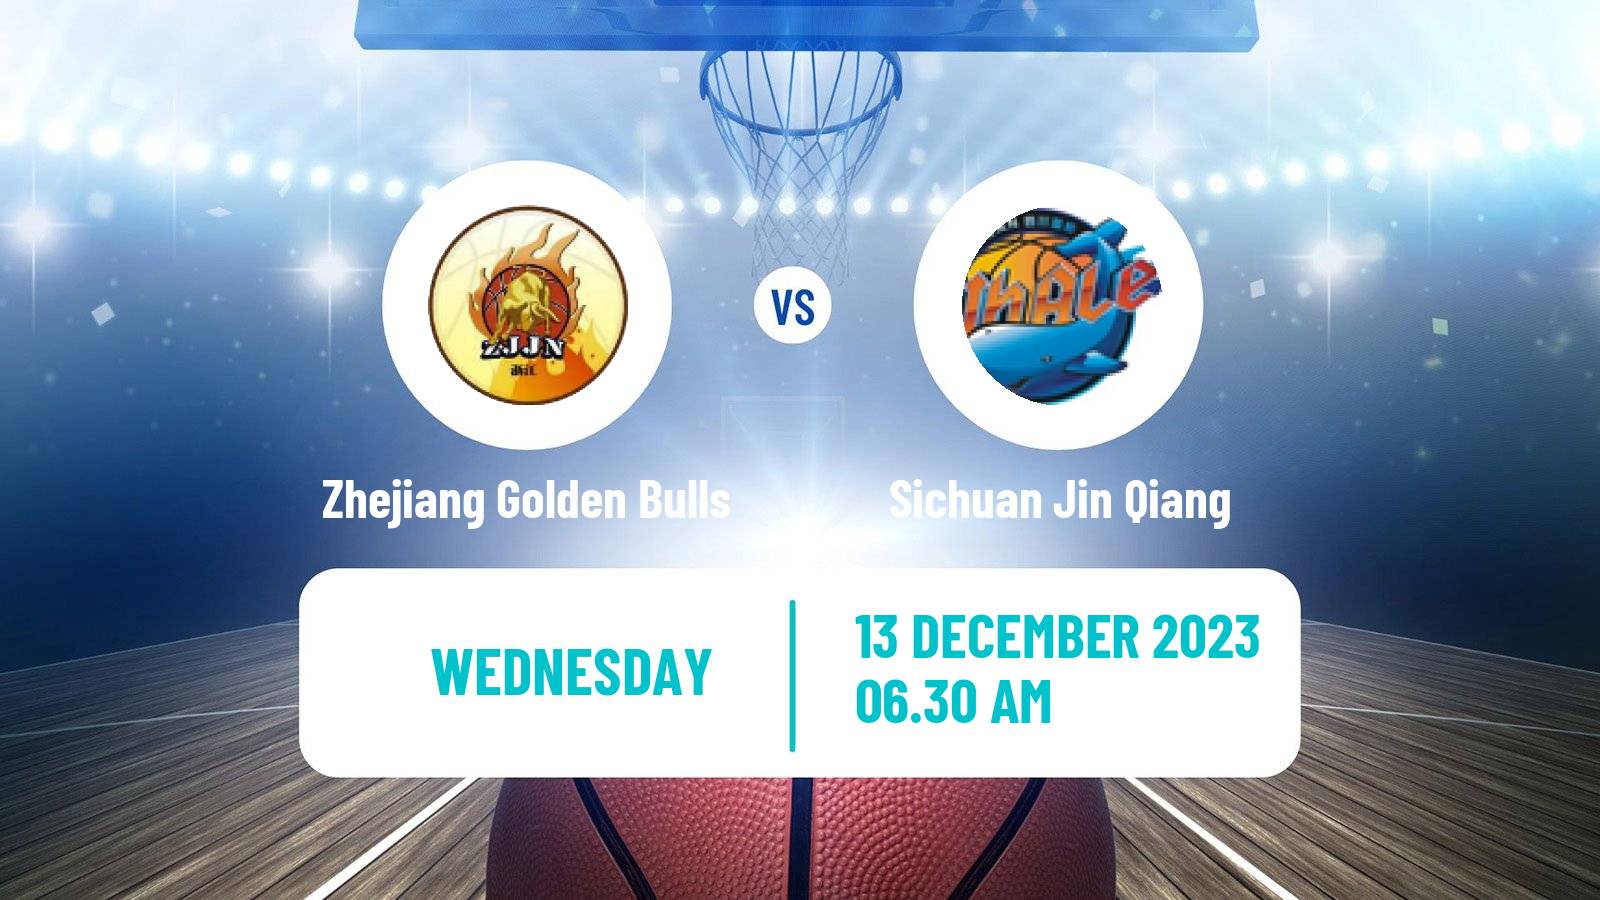 Basketball WCBA Zhejiang Golden Bulls - Sichuan Jin Qiang